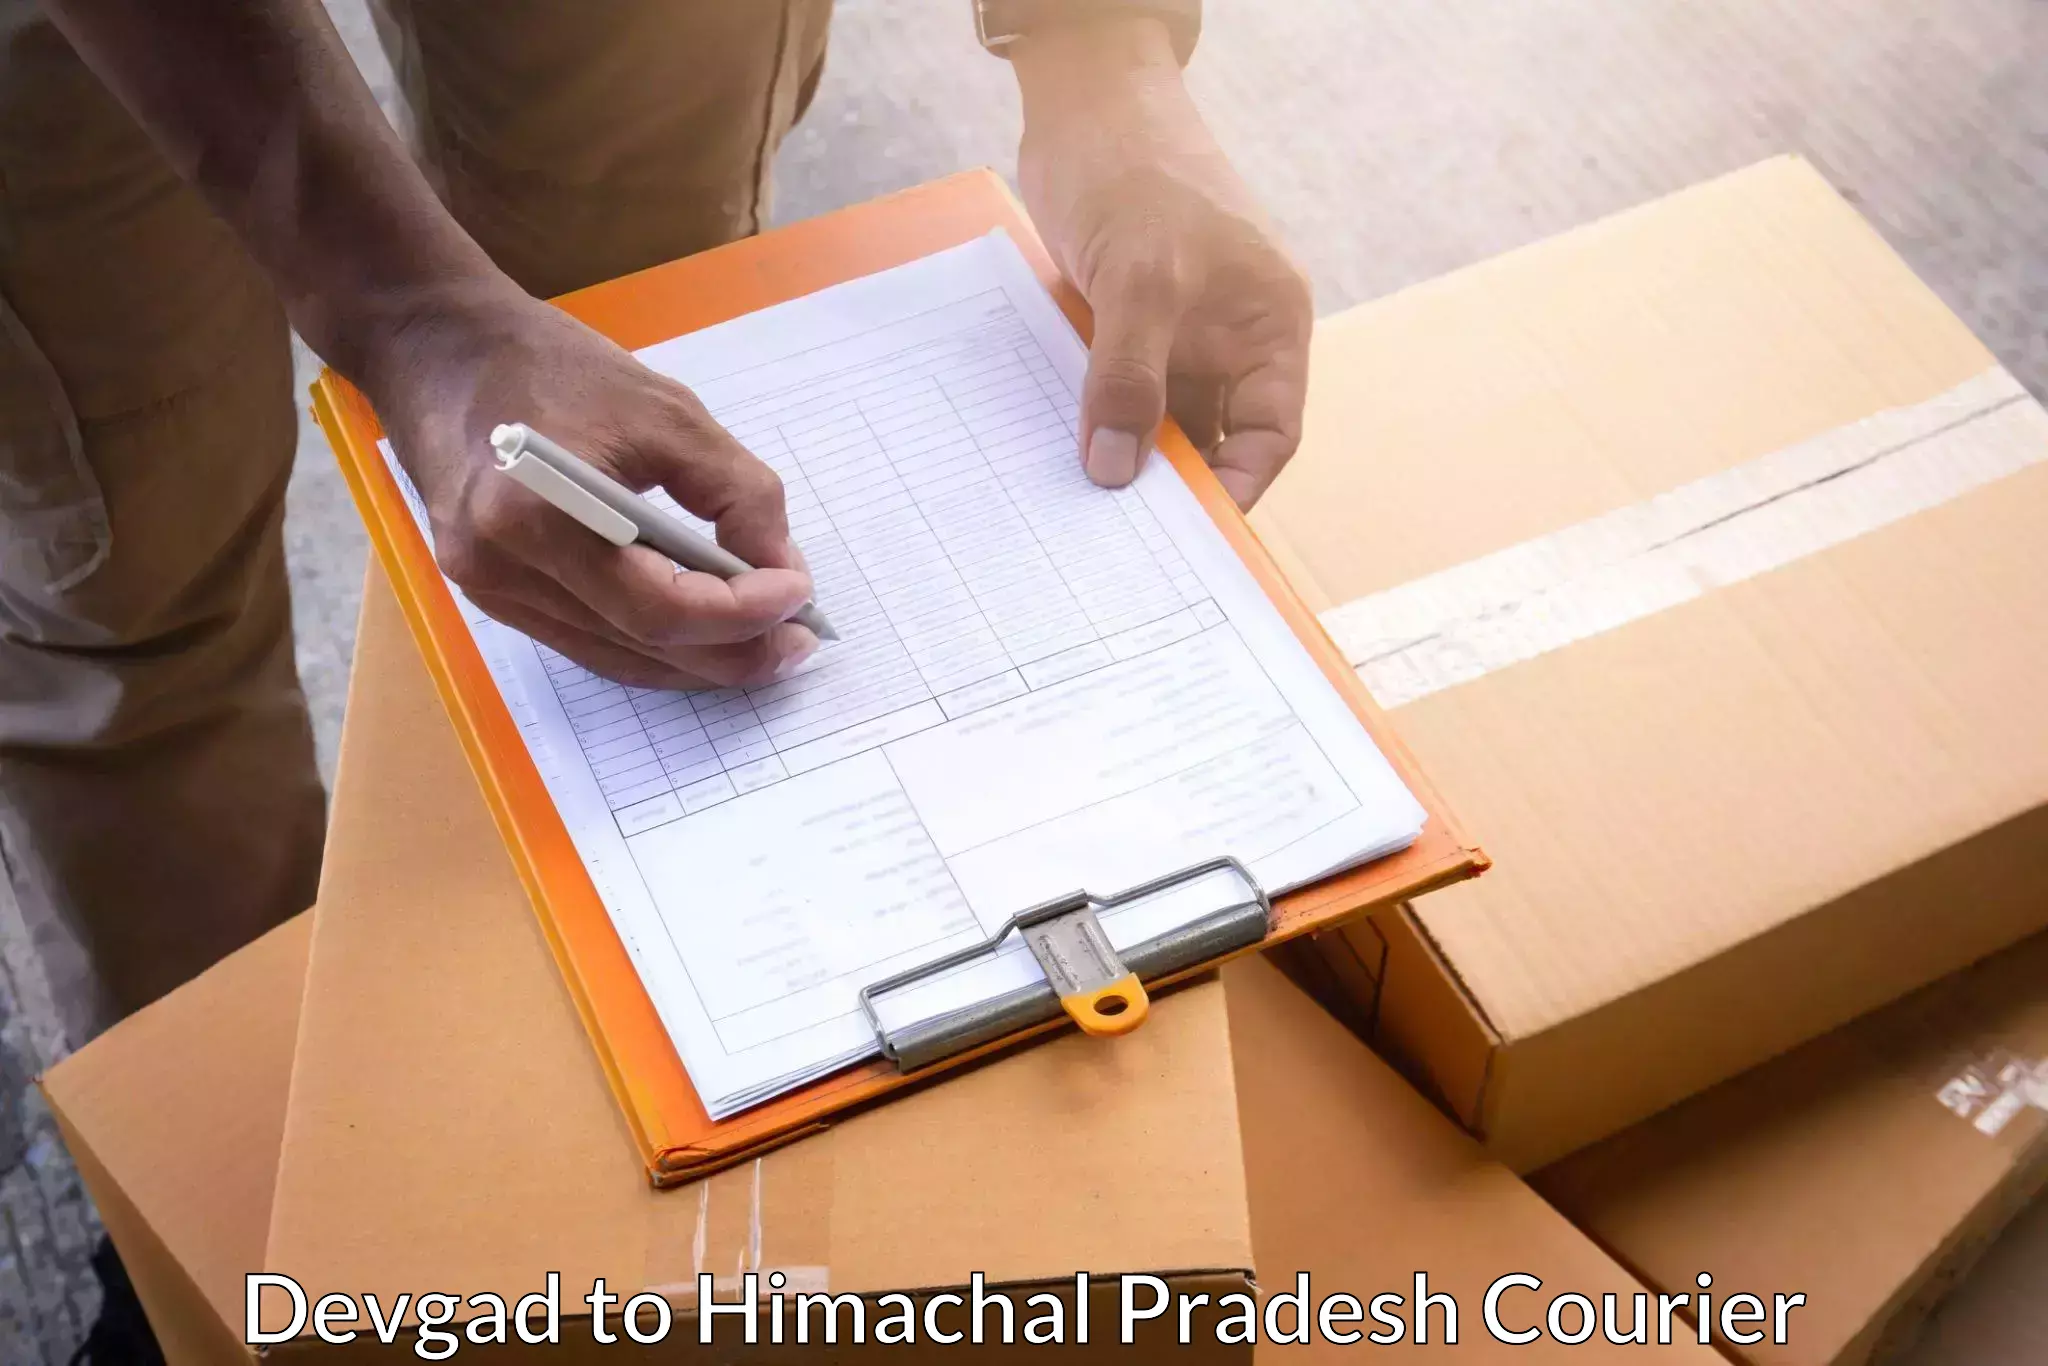 Reliable courier services Devgad to Baijnath